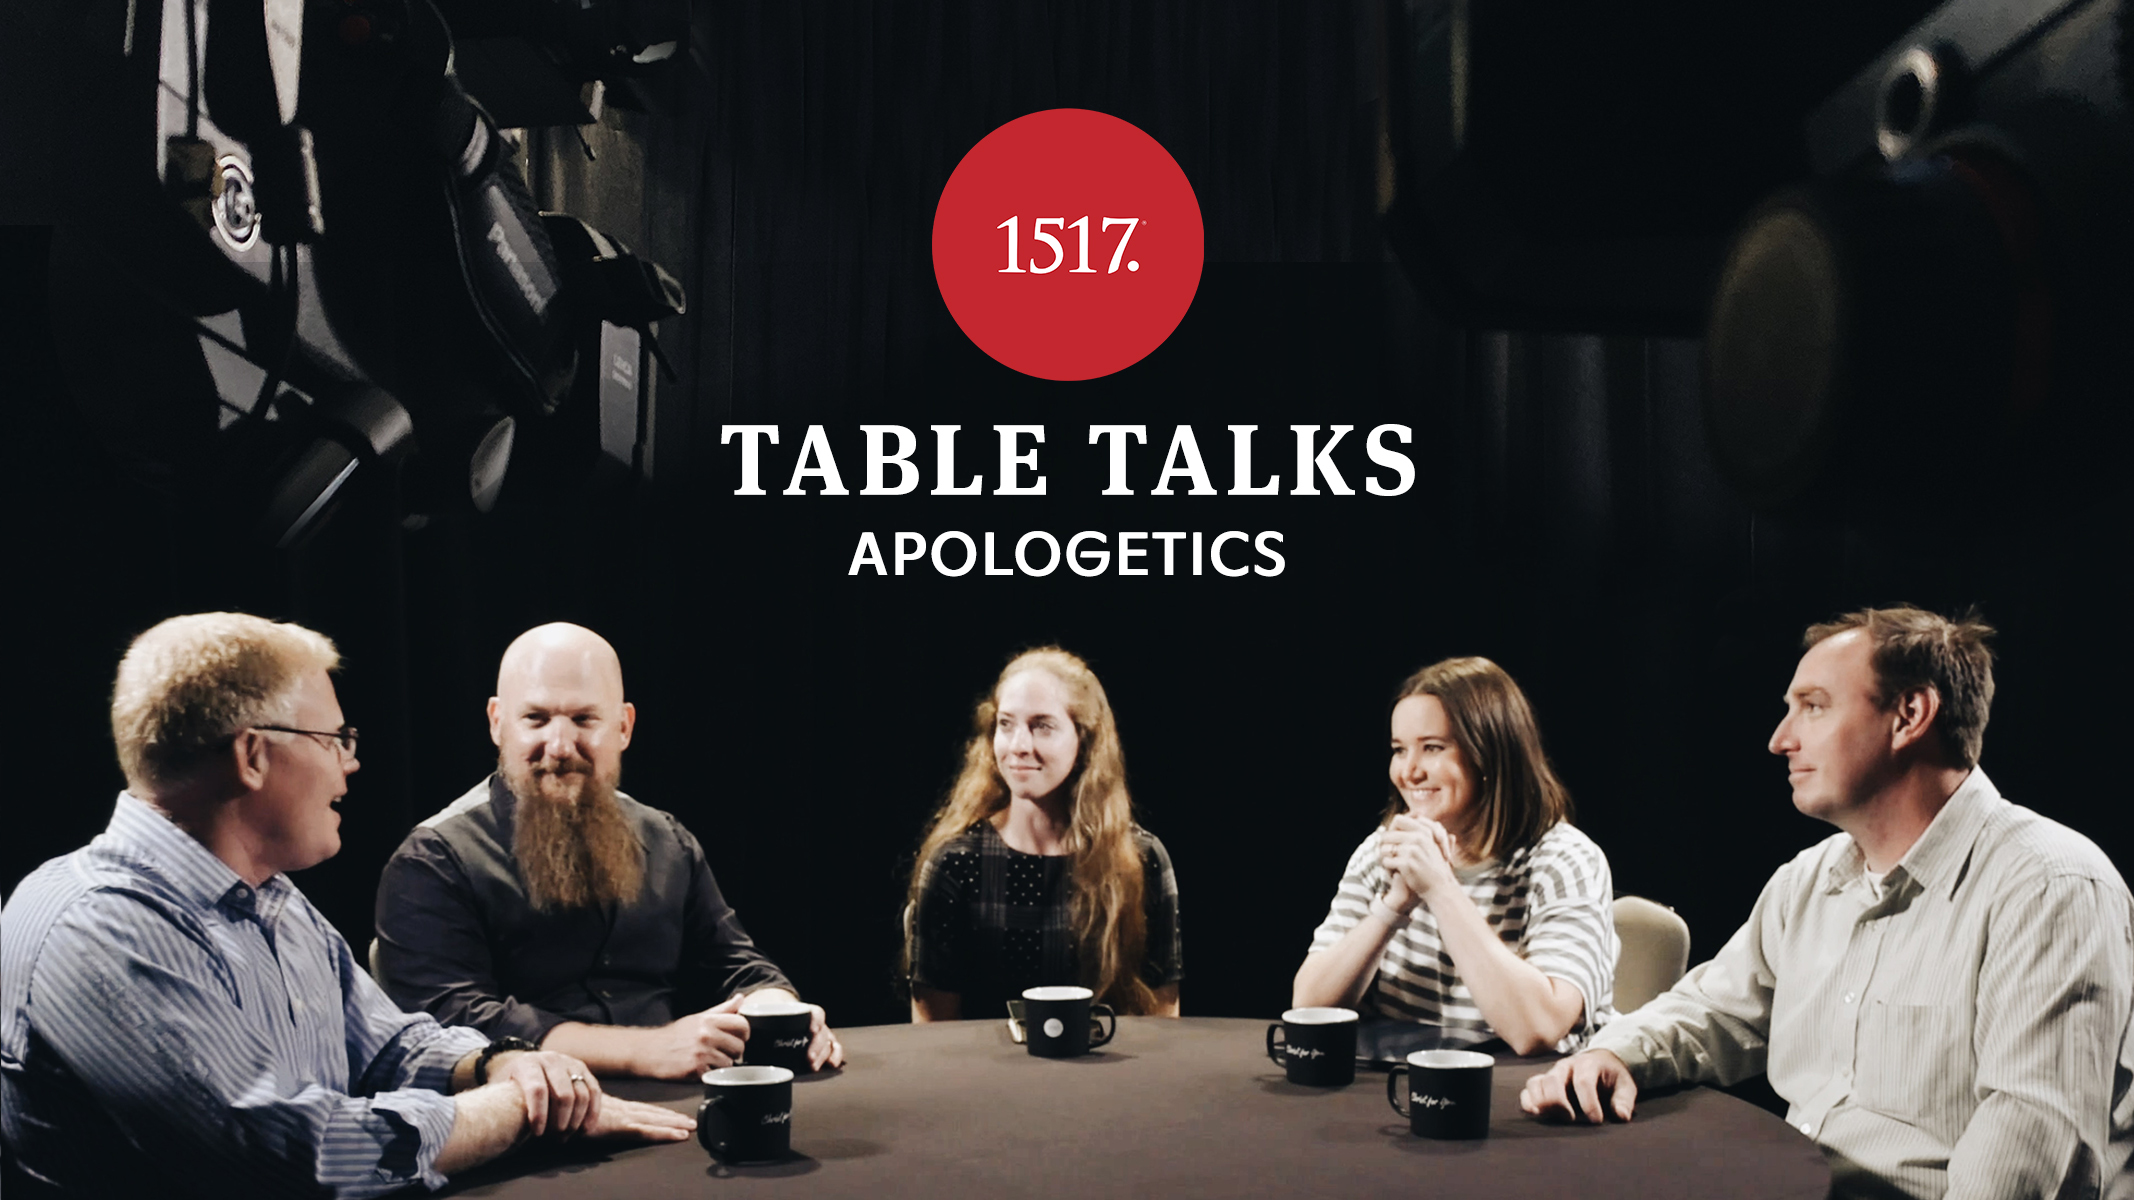 Table Talks: Apologetics